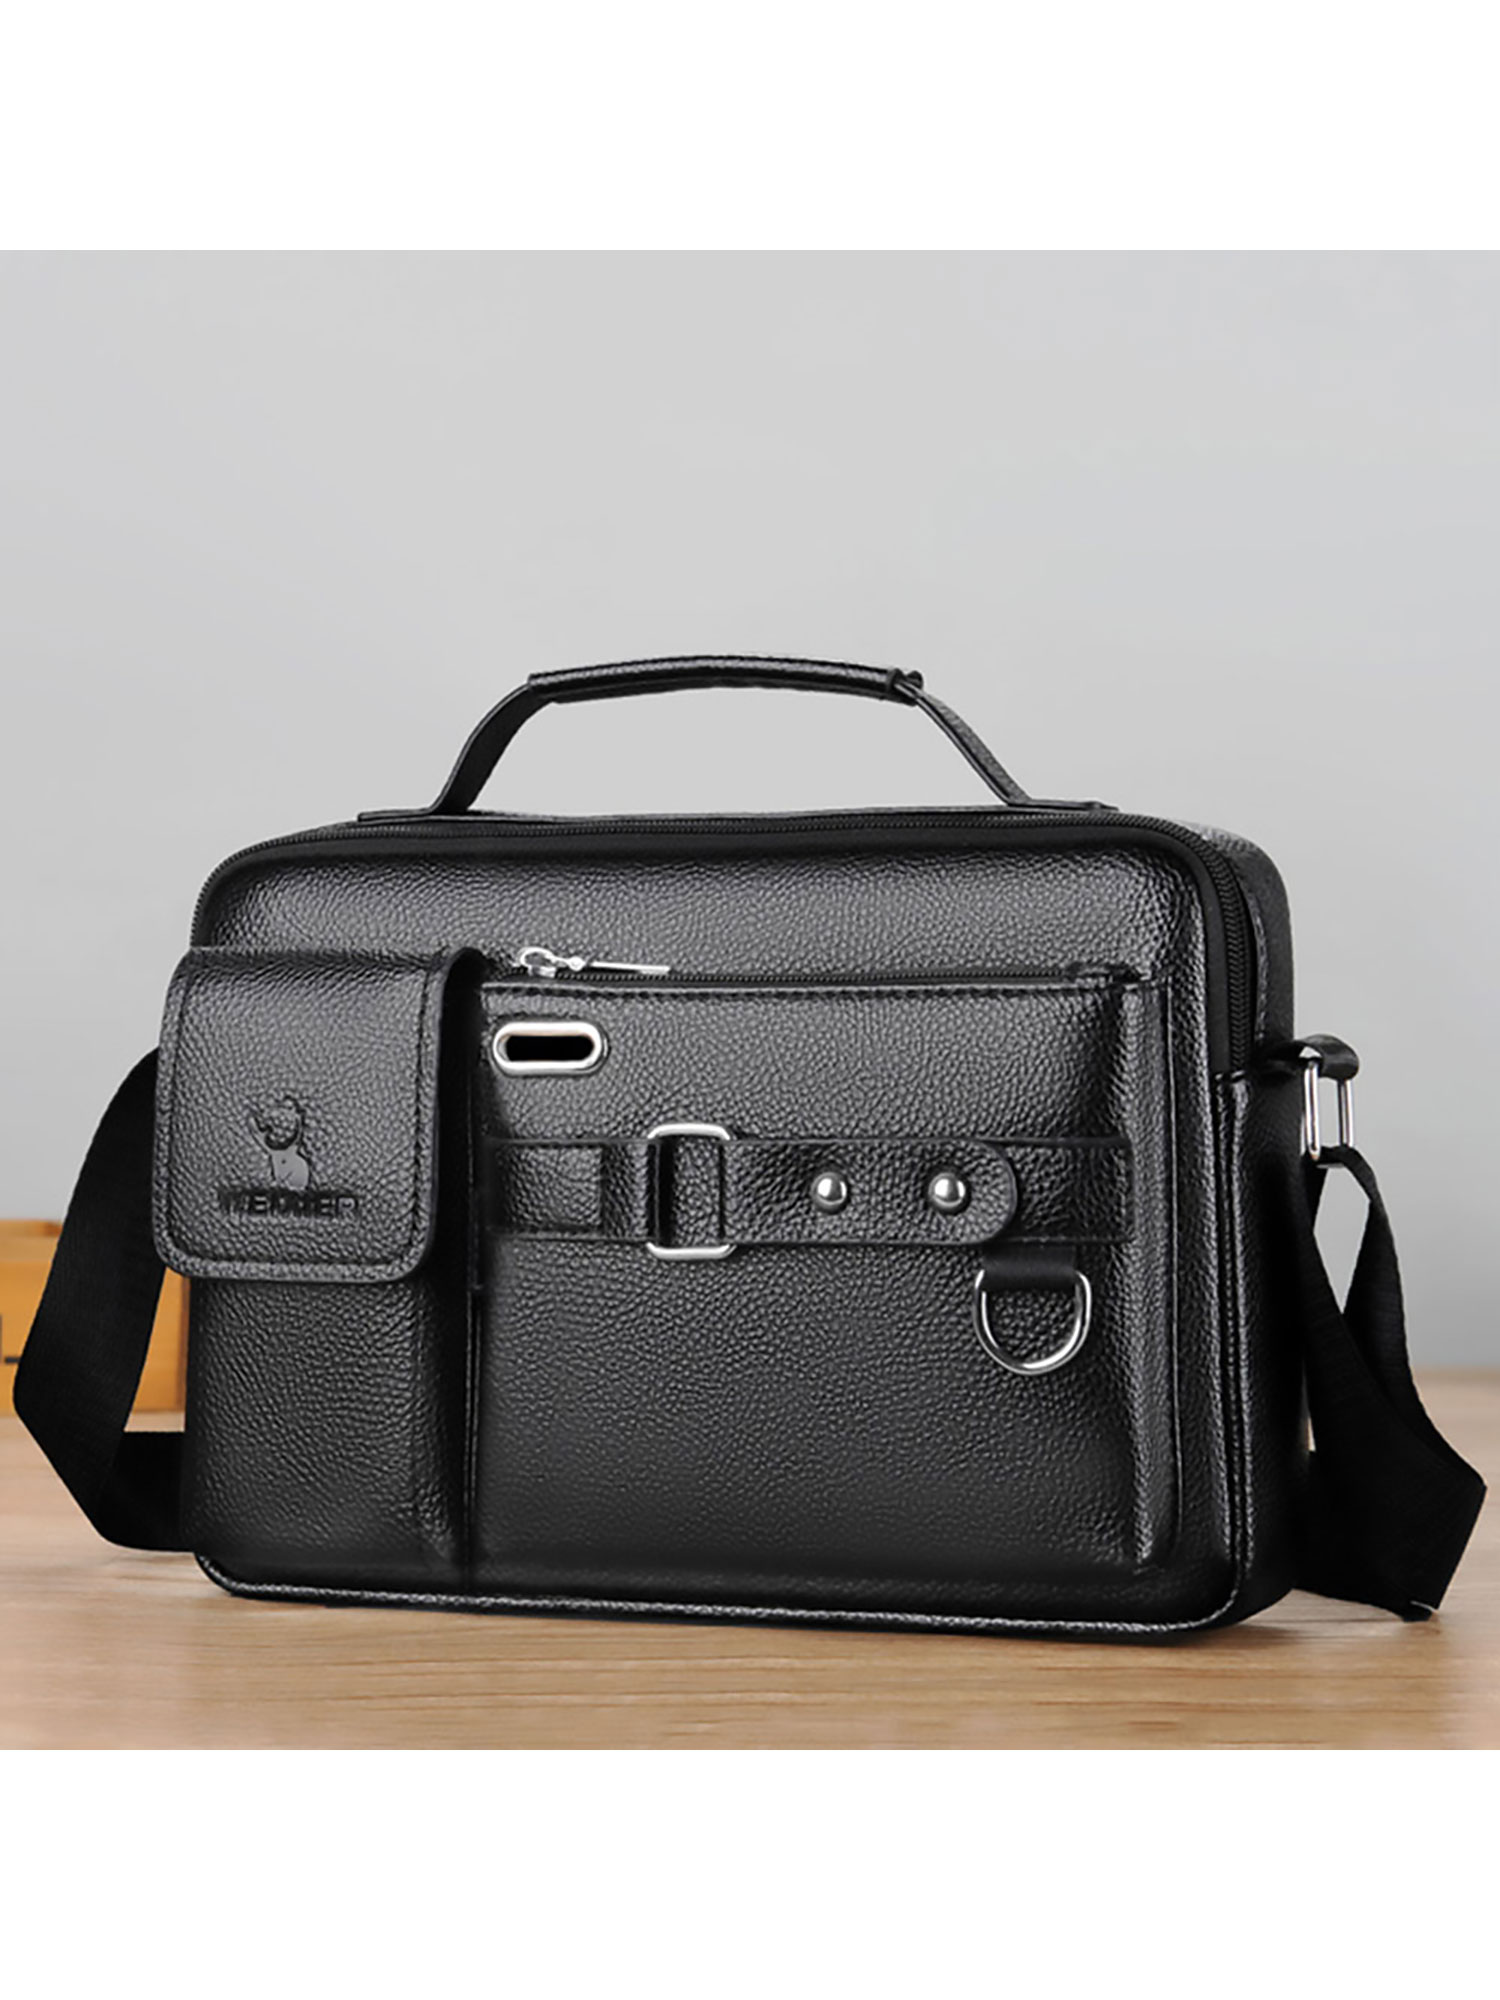 Voguele Mens Leather Messenger Handbag Men Multi Pocket Business ...